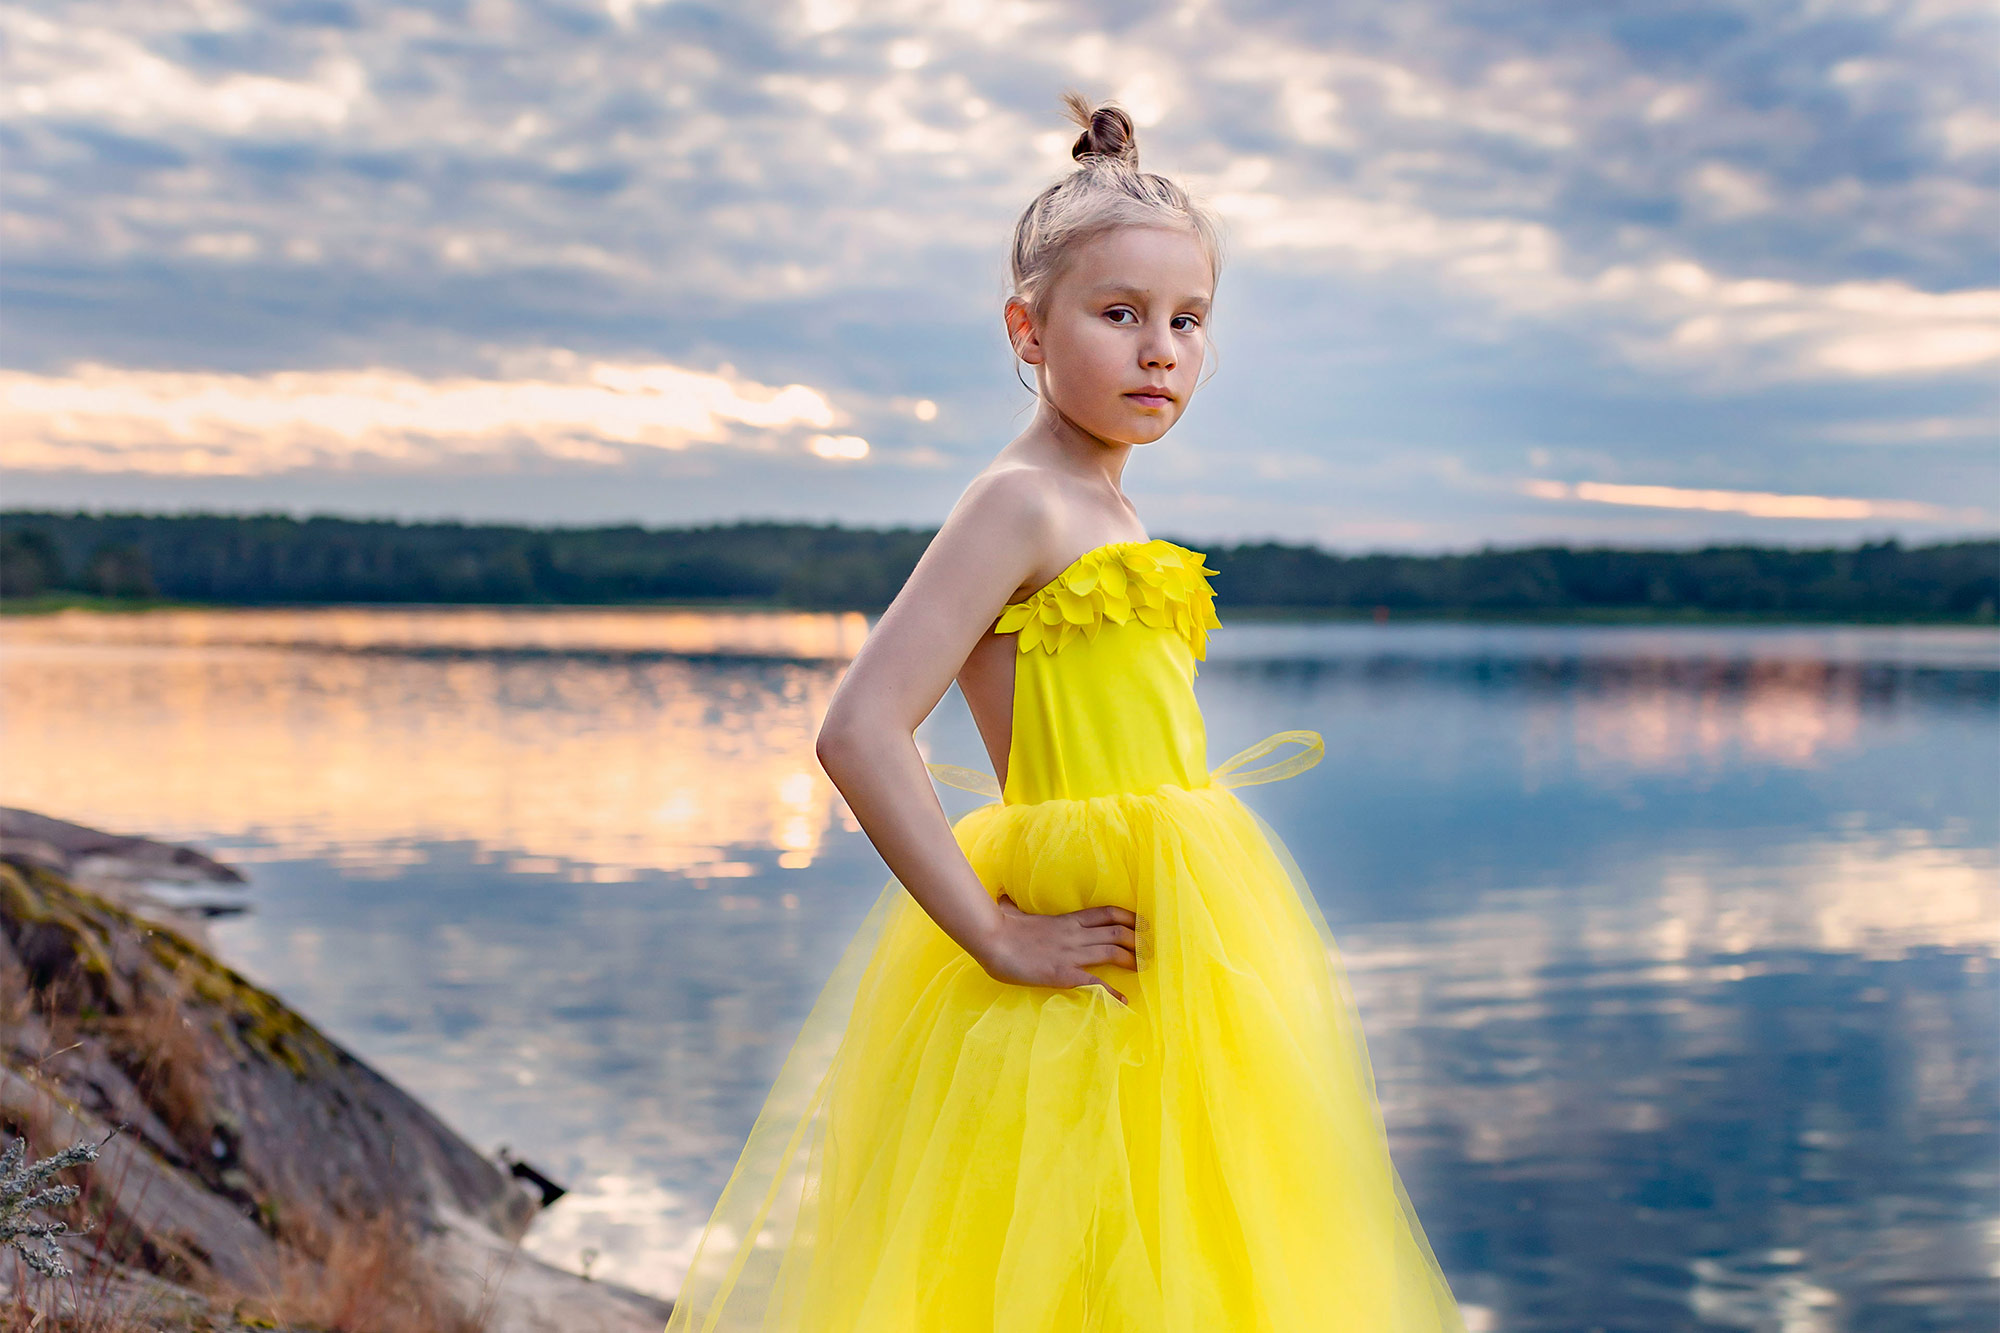 En nioårig flicka i gul tyllklänning står på klipporna vid havet. Flickan tittar in i kameran och i bakgrunden går solen ner och skapar vackra färger i vattnet och himlen.